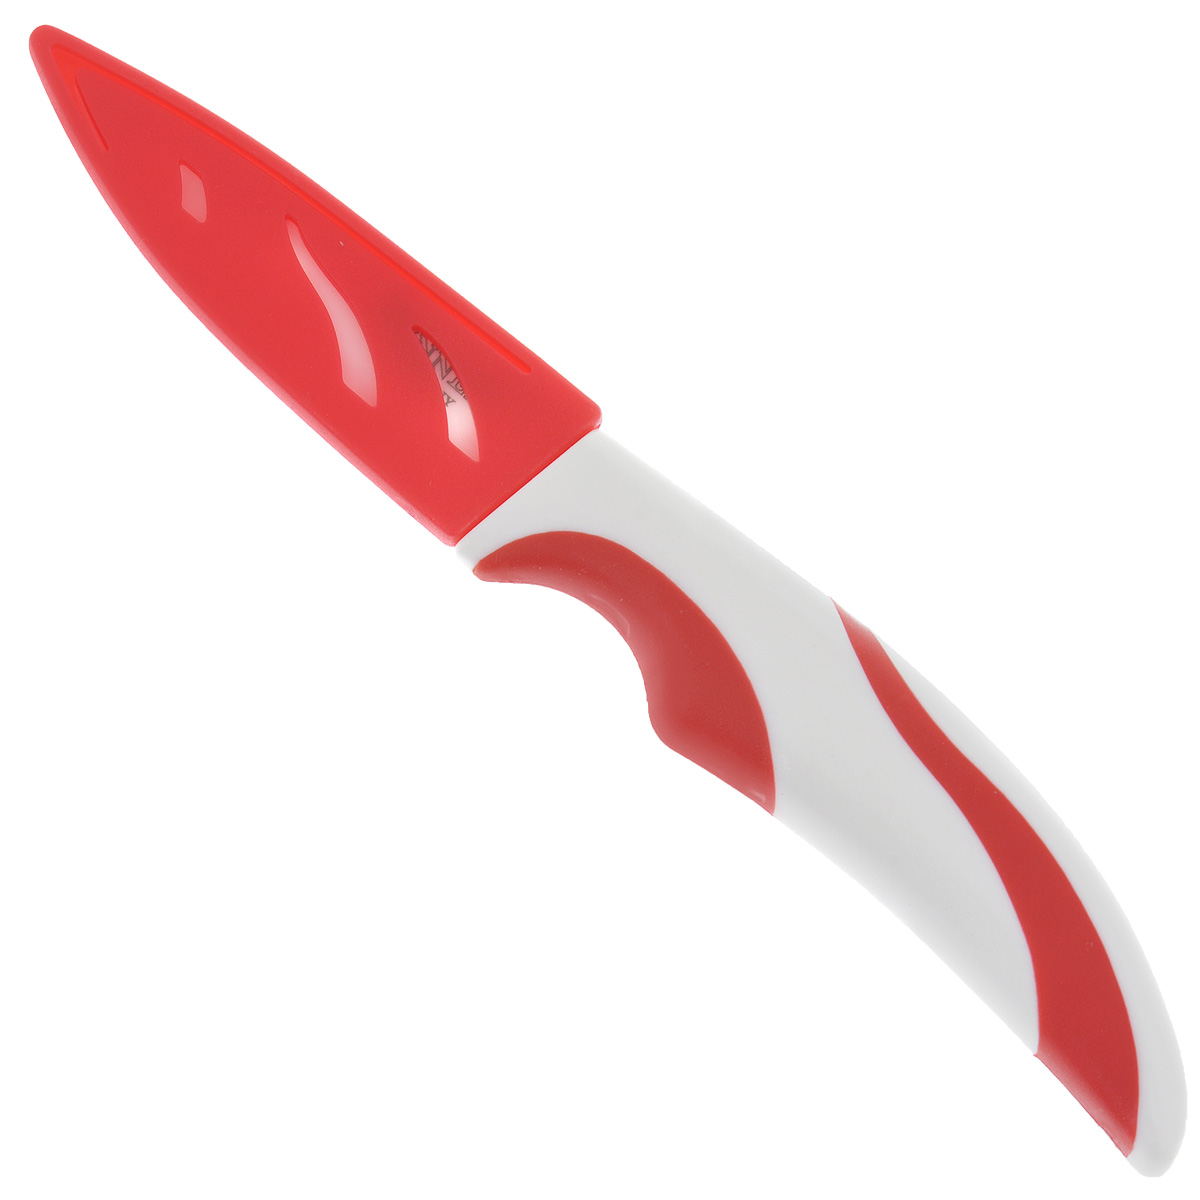 фото Нож для чистки "Winner", керамический, с чехлом, цвет: красный, длина лезвия 7,4 см